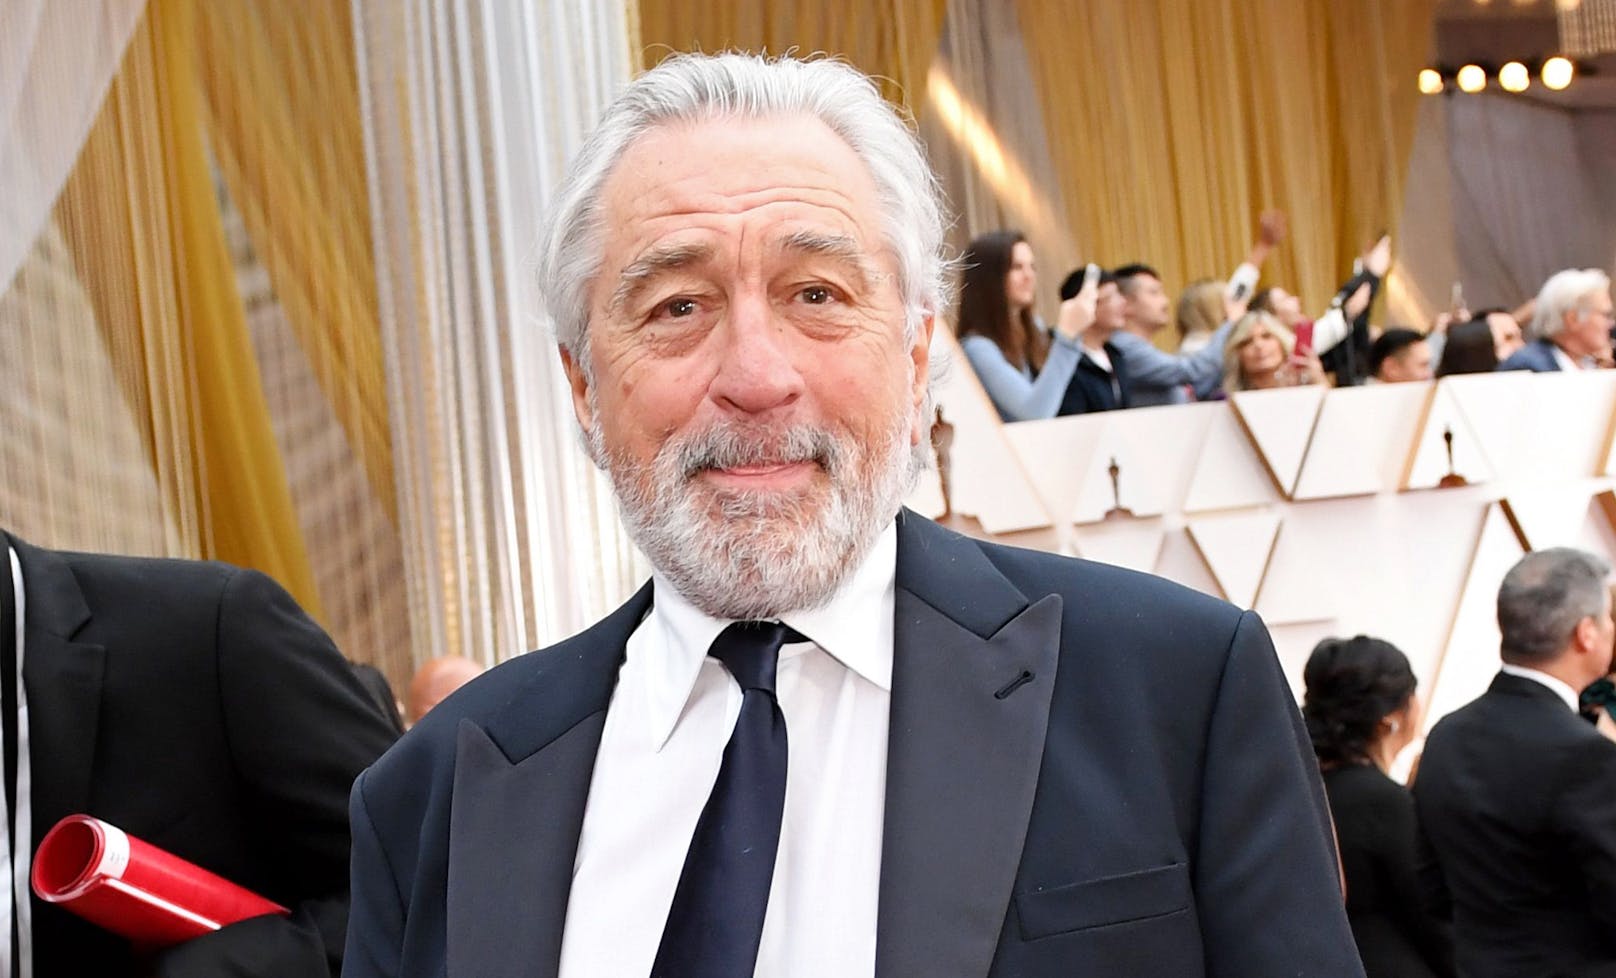 Vorwürfe gegen De Niro: "Er pinkelte beim Telefonat"